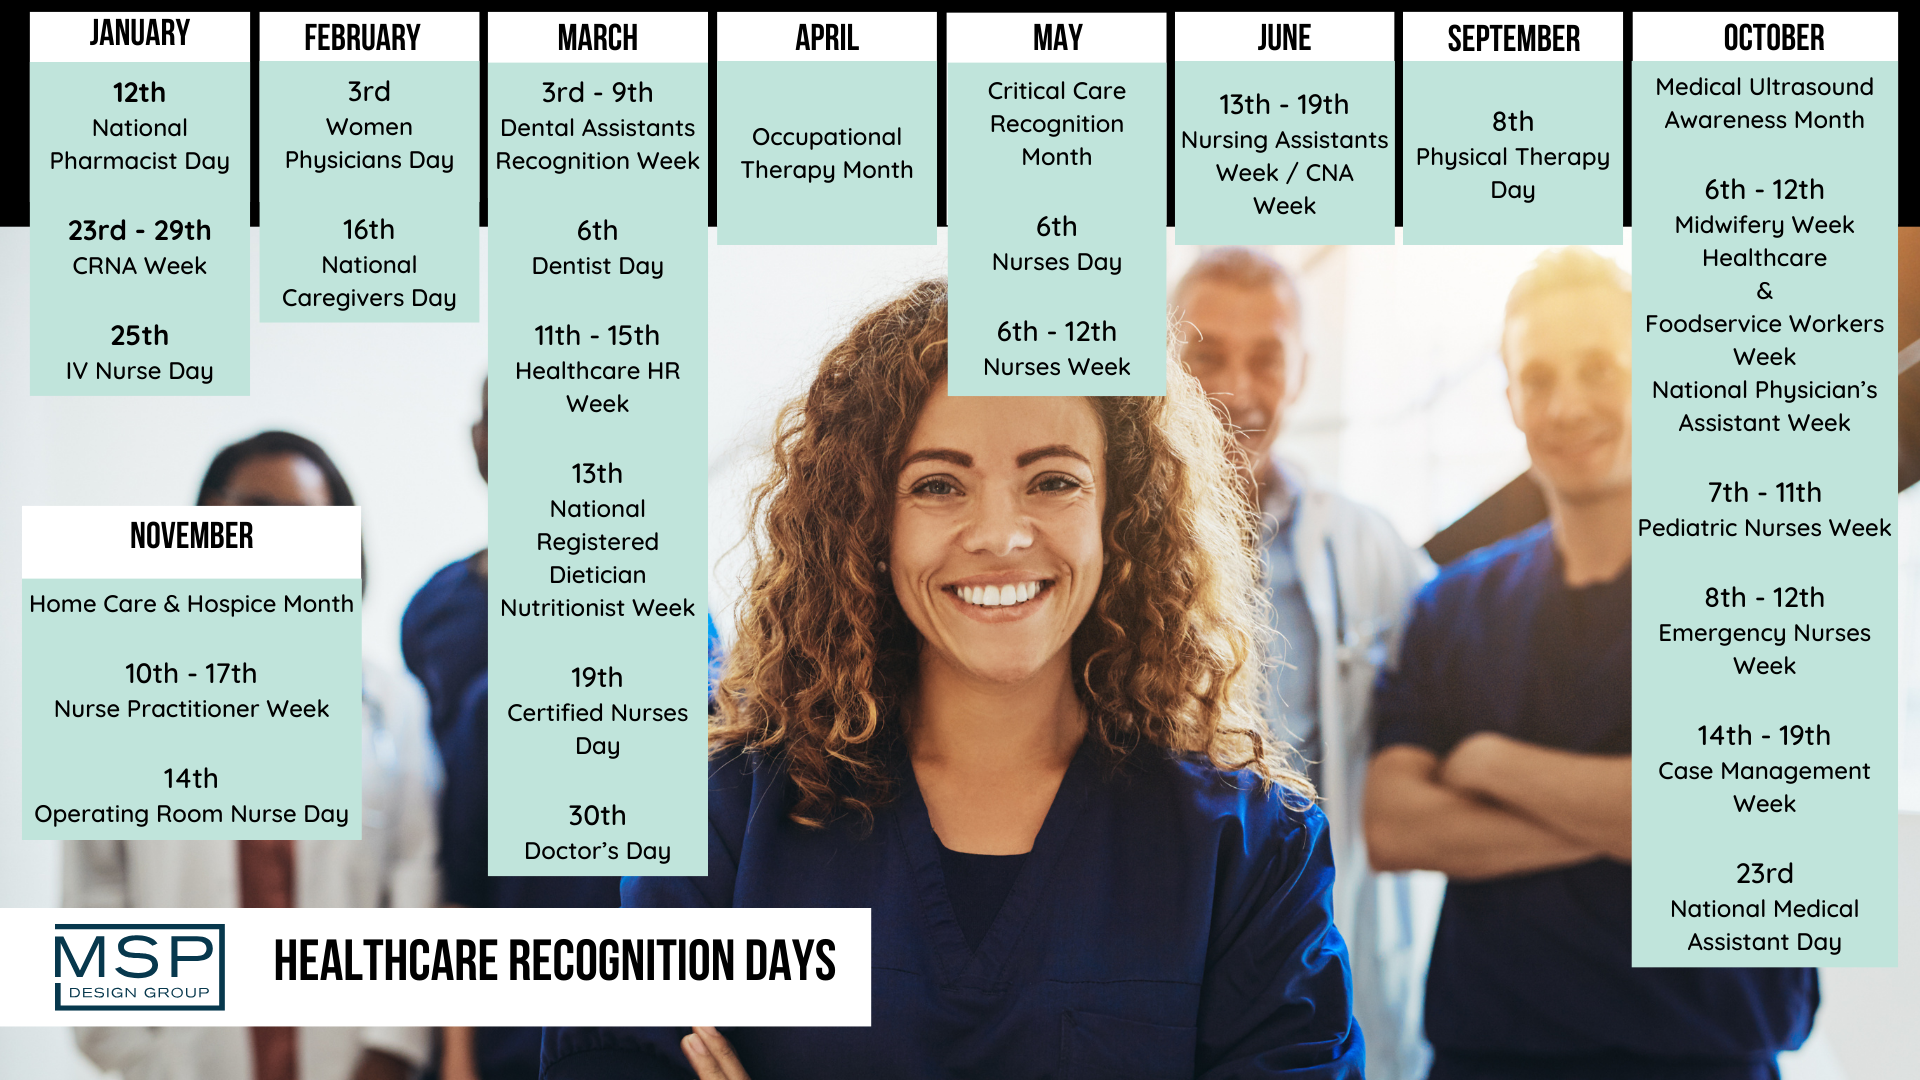 Employee Appreciation Calendar - Healthcare